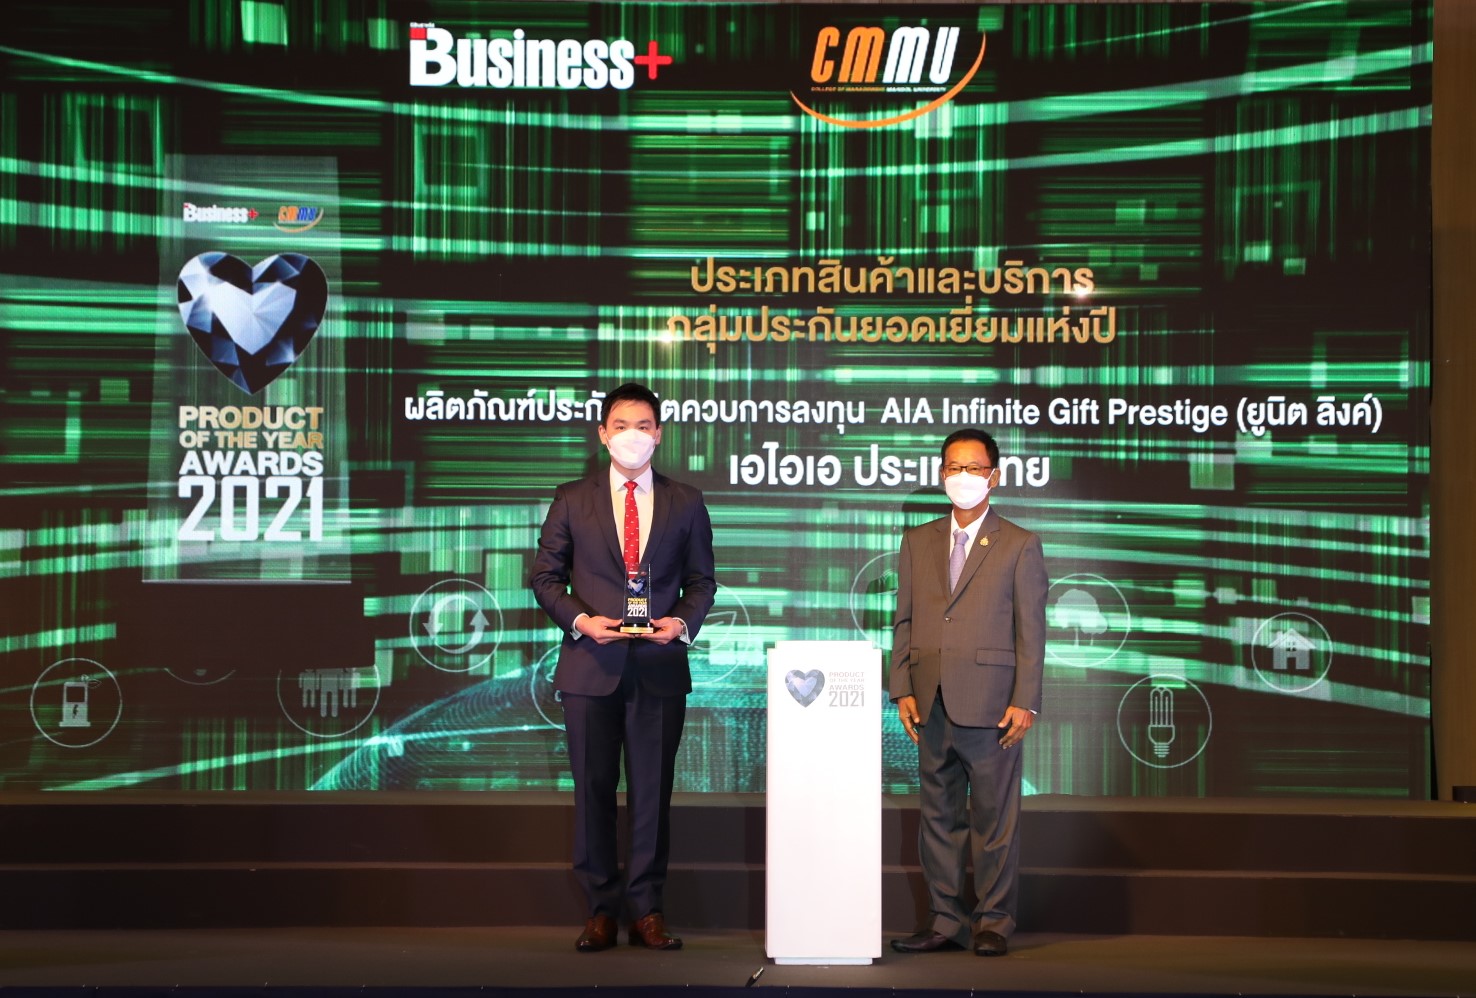 เอไอเอ ประเทศไทย พาผลิตภัณฑ์ ‘AIA Infinite Gift Prestige’ เอไอเอ ประเทศไทย พาผลิตภัณฑ์ ‘AIA Infinite Gift Prestige’ (Unit Linked)  คว้ารางวัล Product of the Year Awards 2021(Unit Linked)  คว้ารางวัล Product of the Year Awards 2021